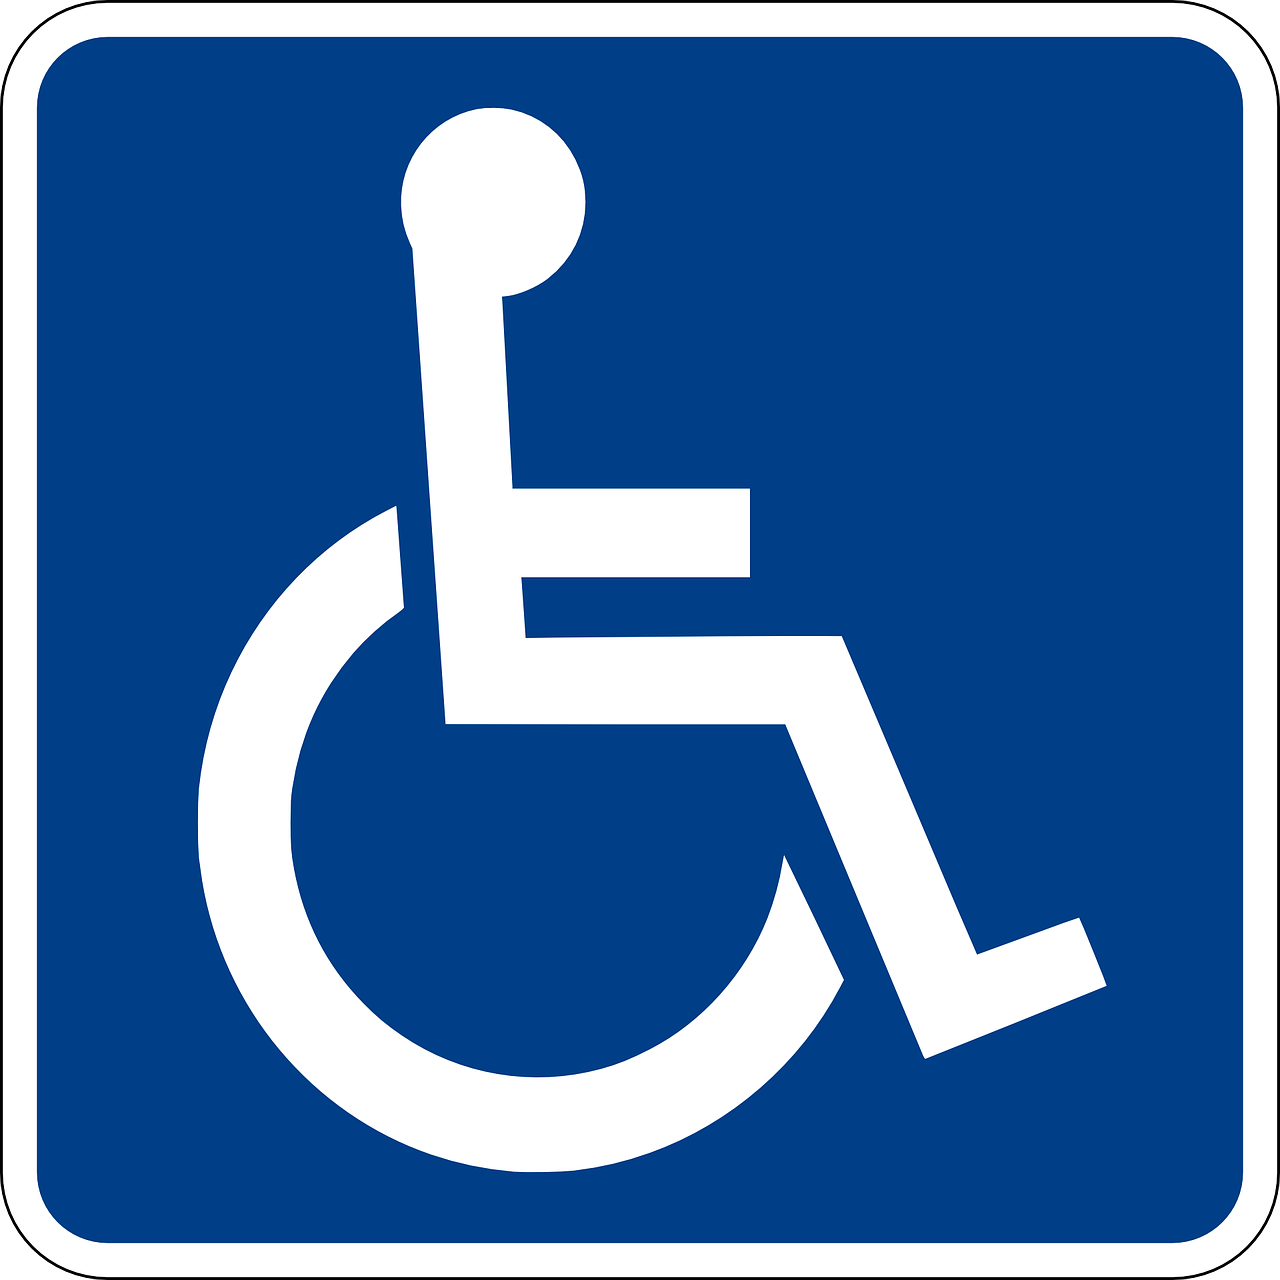 Ambulante woonbegeleiding beoordelingen instelling gehandicaptenzorg verstandelijk gehandicapten